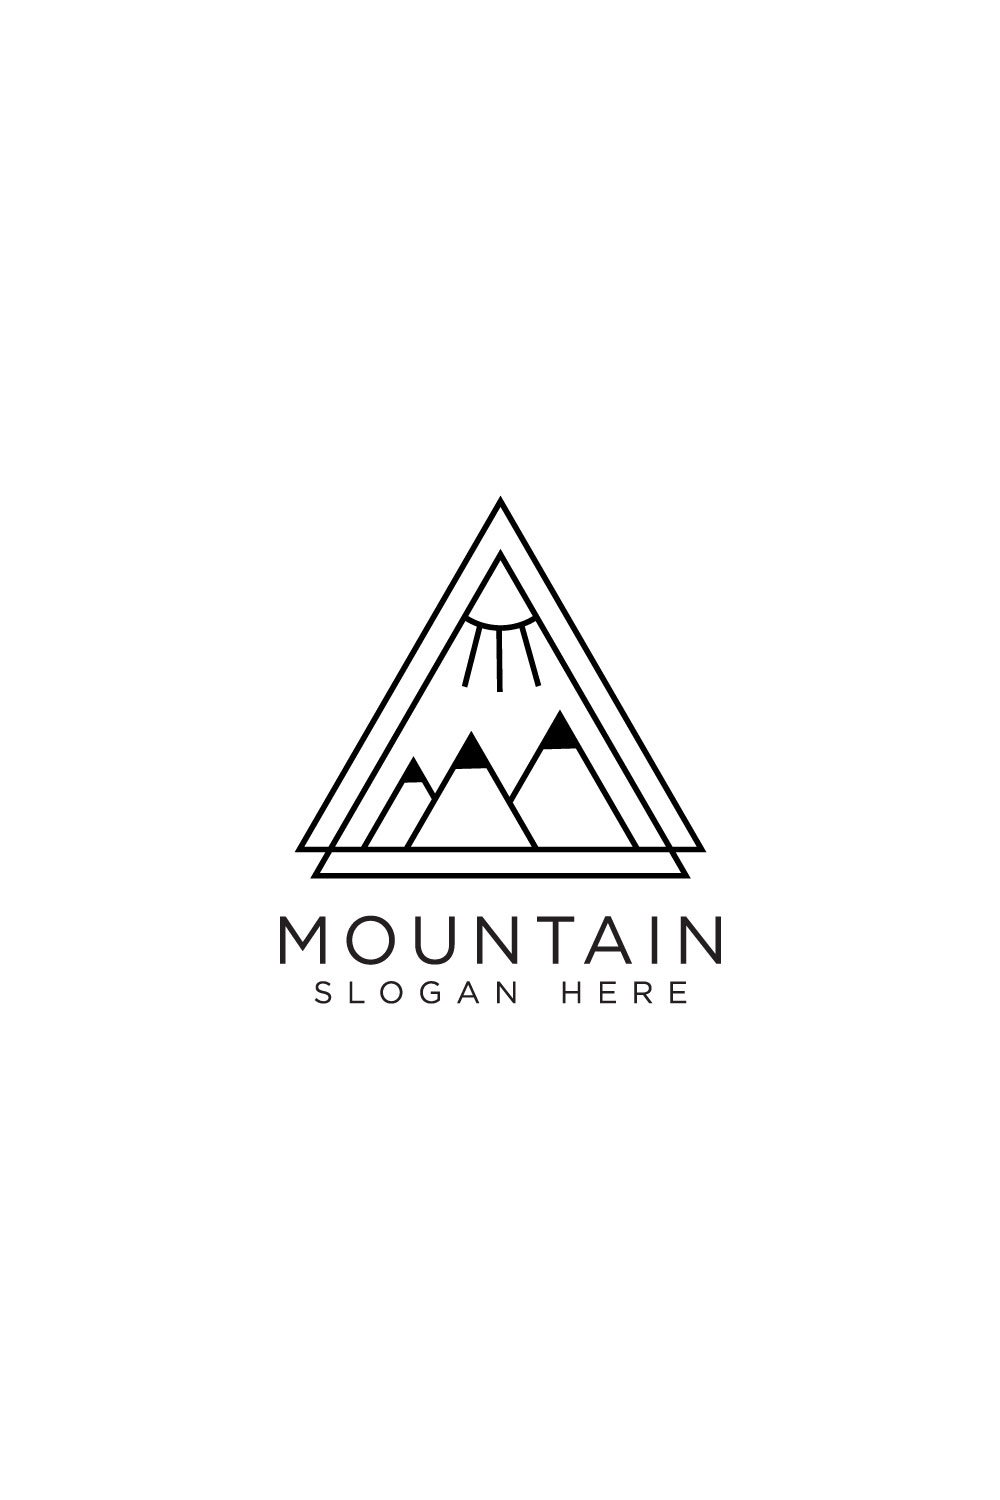 mountain logo design vector pinterest preview image.